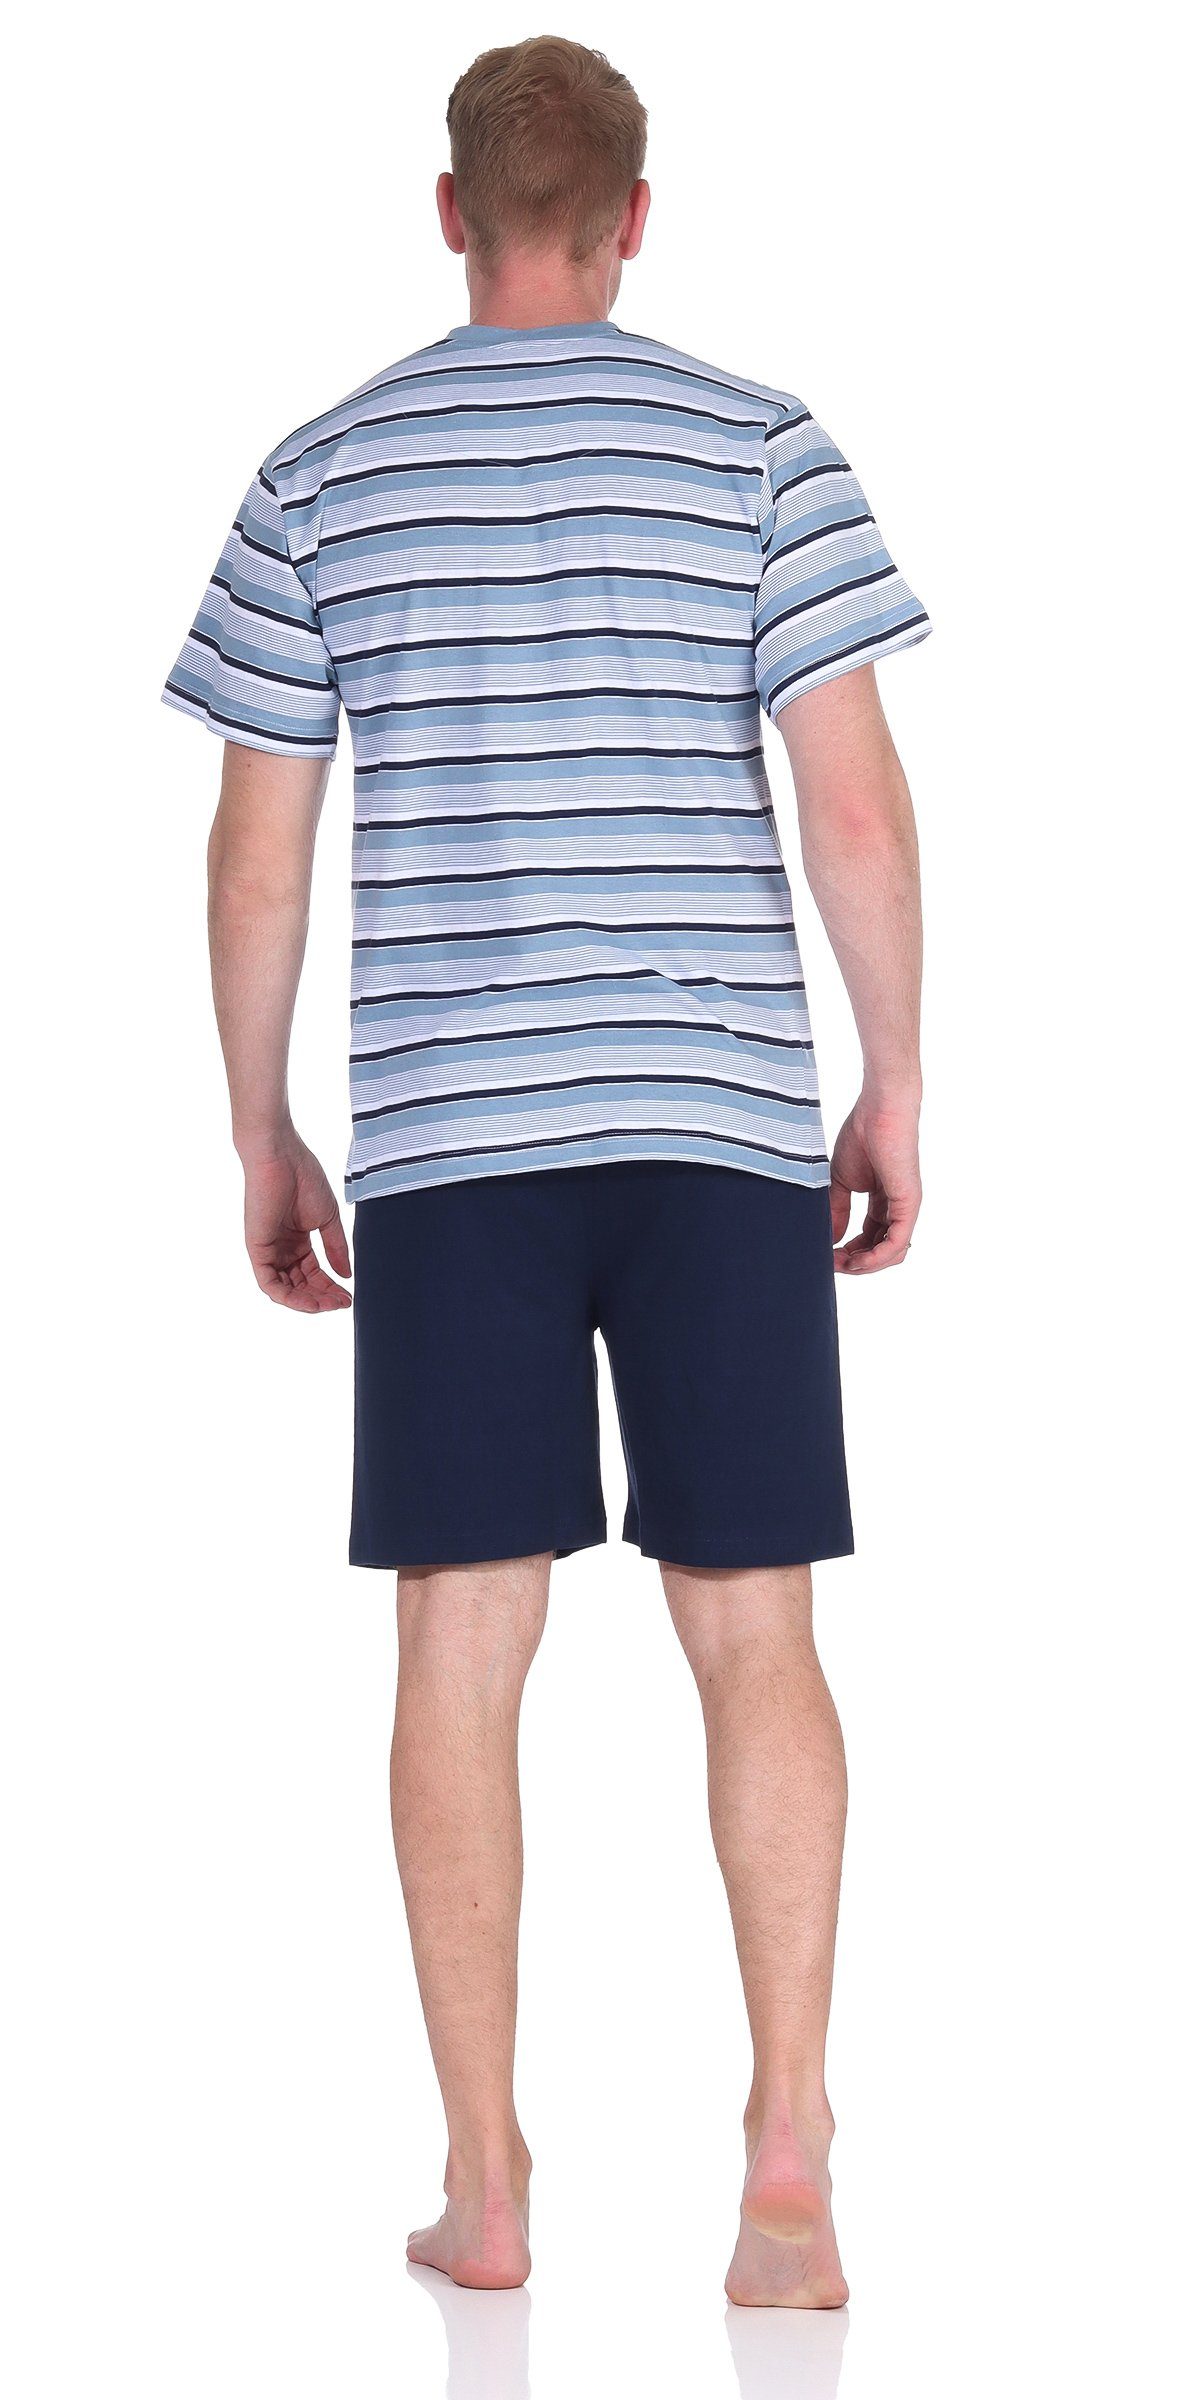 Moonline Shorty Herren Schlafanzug 100% Shorty Kurzarm V-Ausschnitt Single-Jersey mit Baumwolle Blau